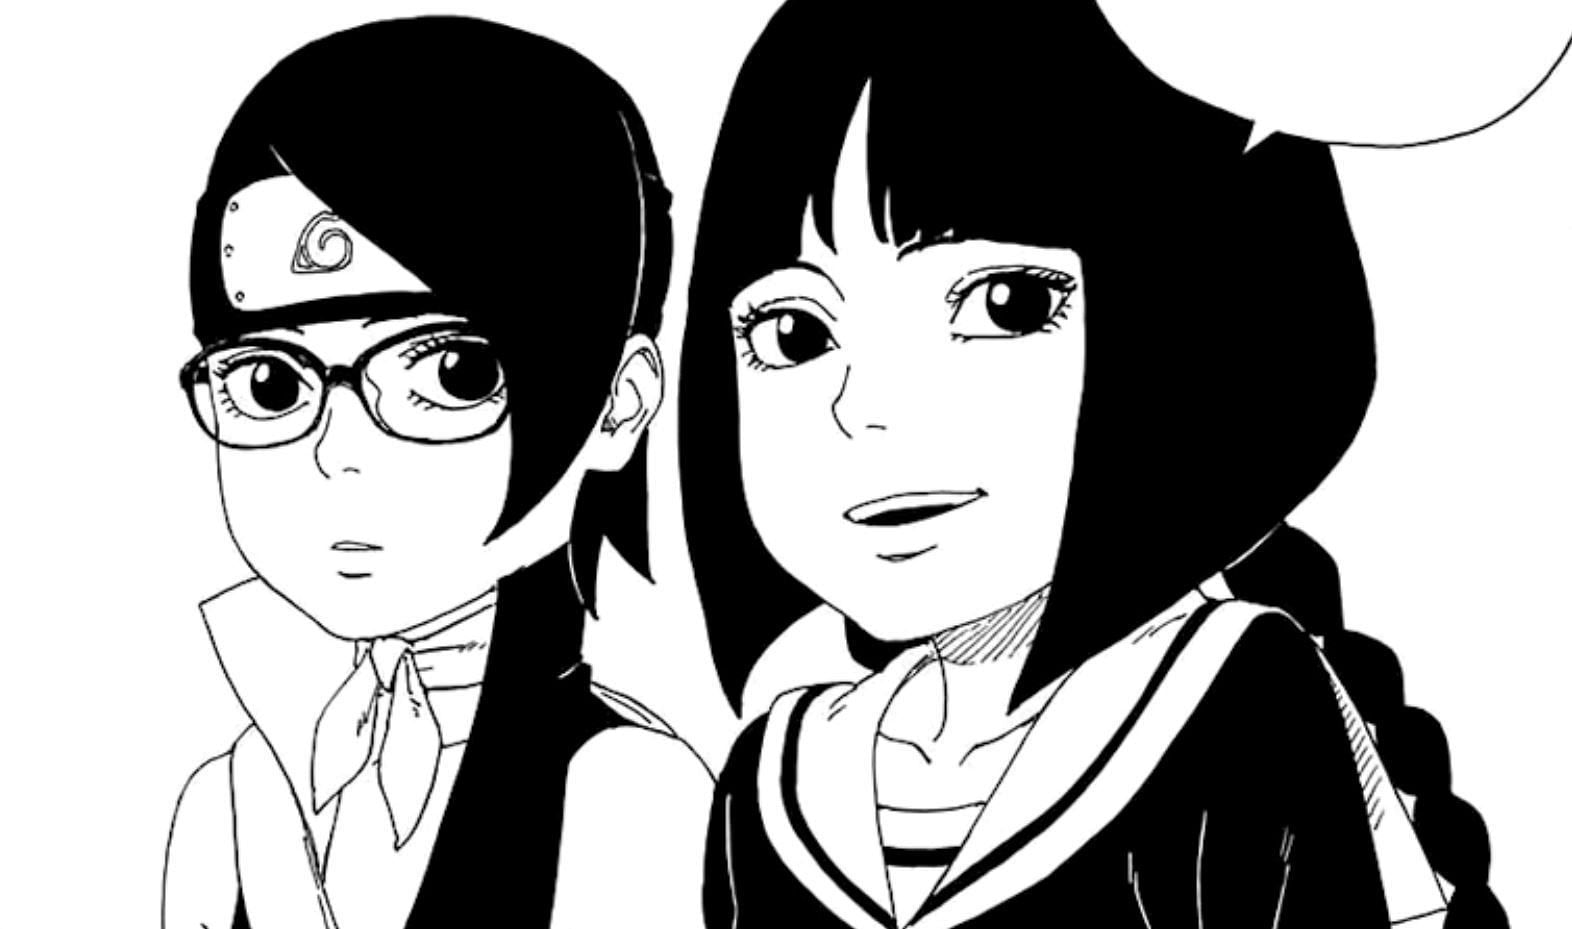 Sarada and Sumire as seen in the Boruto manga (Image via Shueisha)